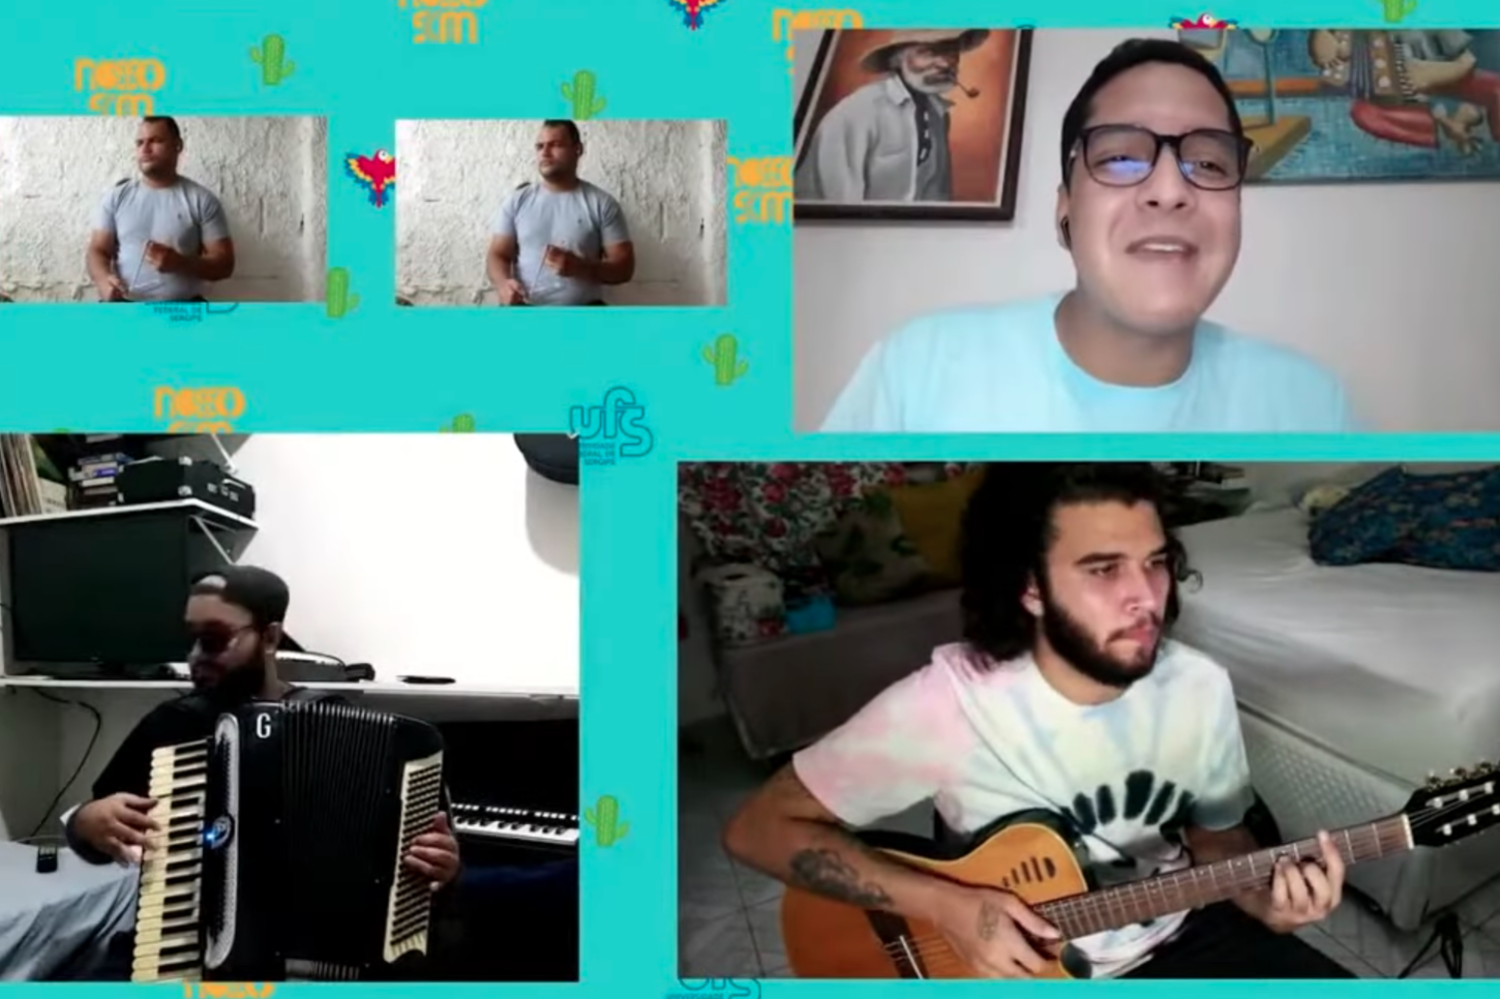 A live se encerrou com uma divertida apresentação do Coletivo Nosso som, projeto de Extensão da UFS que visa promover a música independente em Sergipe